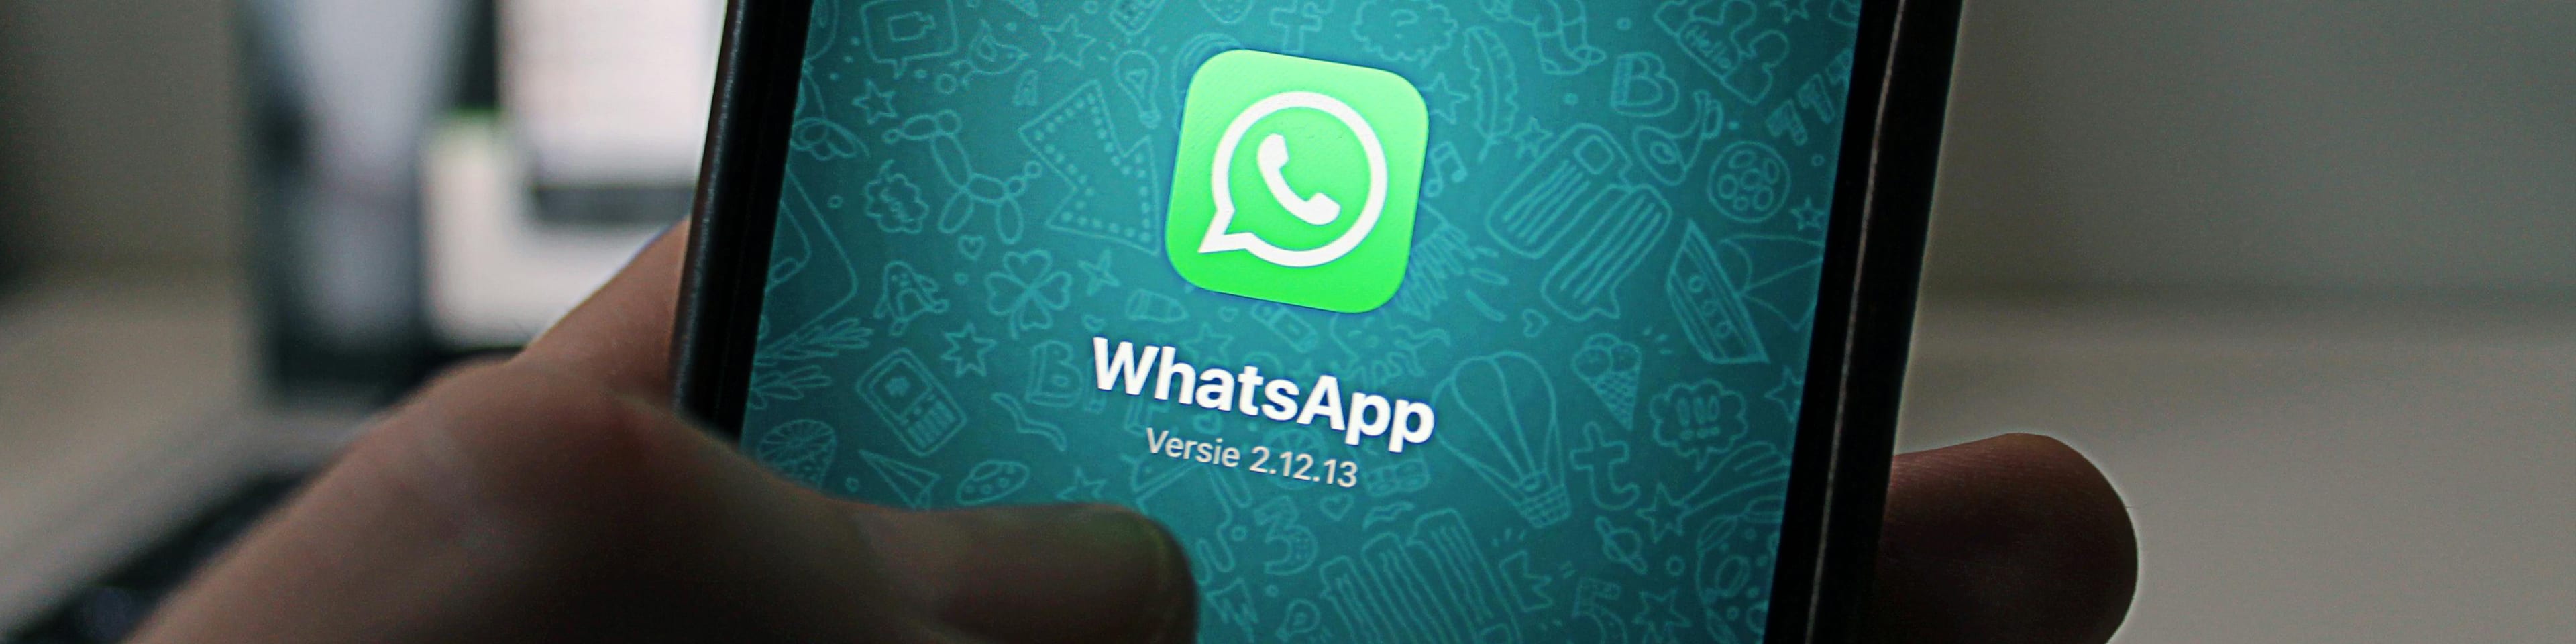 Los mensajes de ‘WhatsApp’ como prueba válida